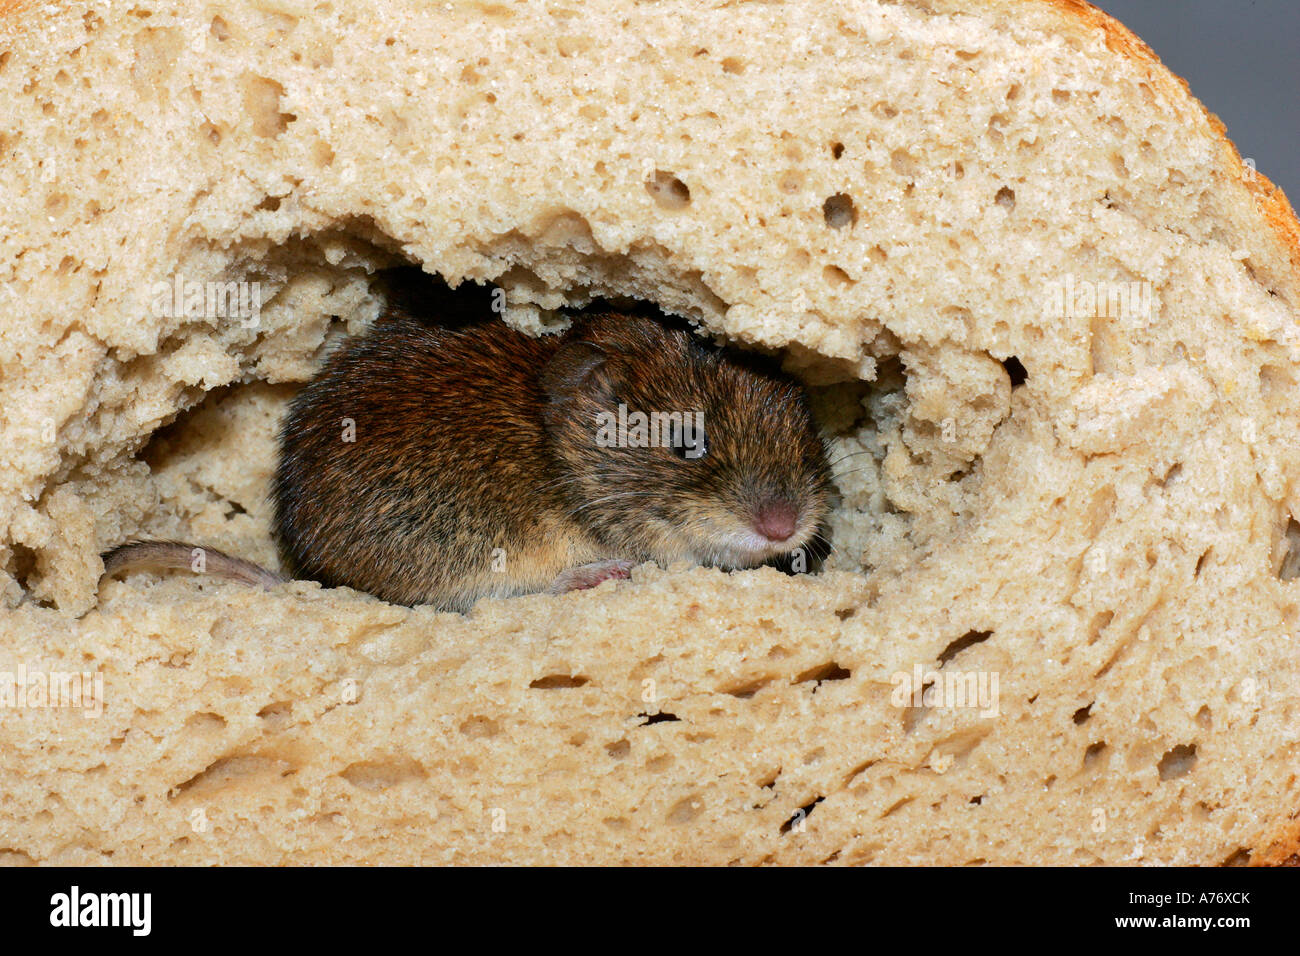 Seduta di topo in un pane Foto Stock